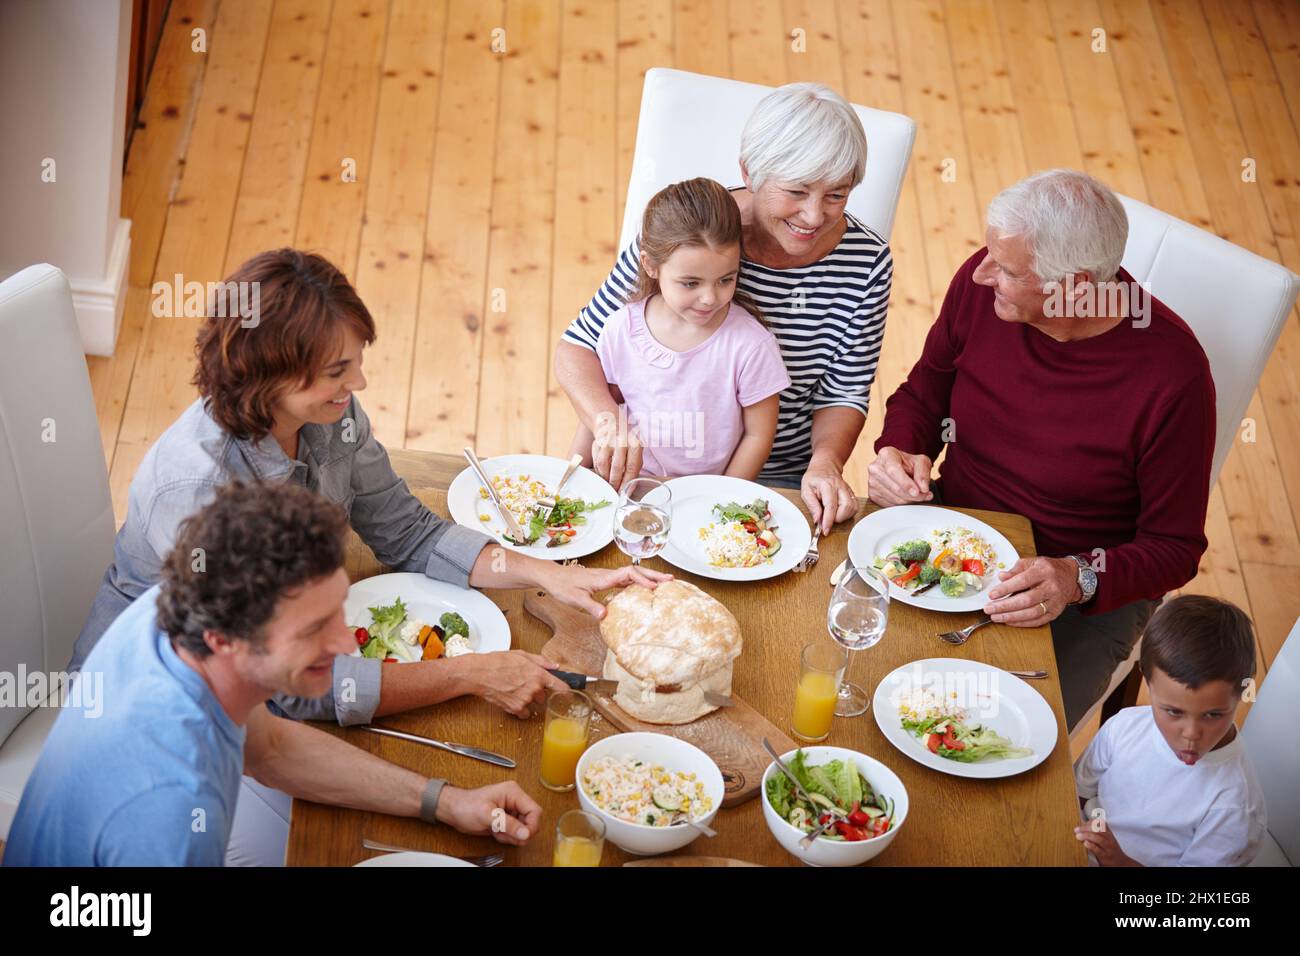 Essen und Lächeln. Aufnahme einer Familie mit mehreren Generationen, die gemeinsam eine Mahlzeit gemeinsam hat. Stockfoto